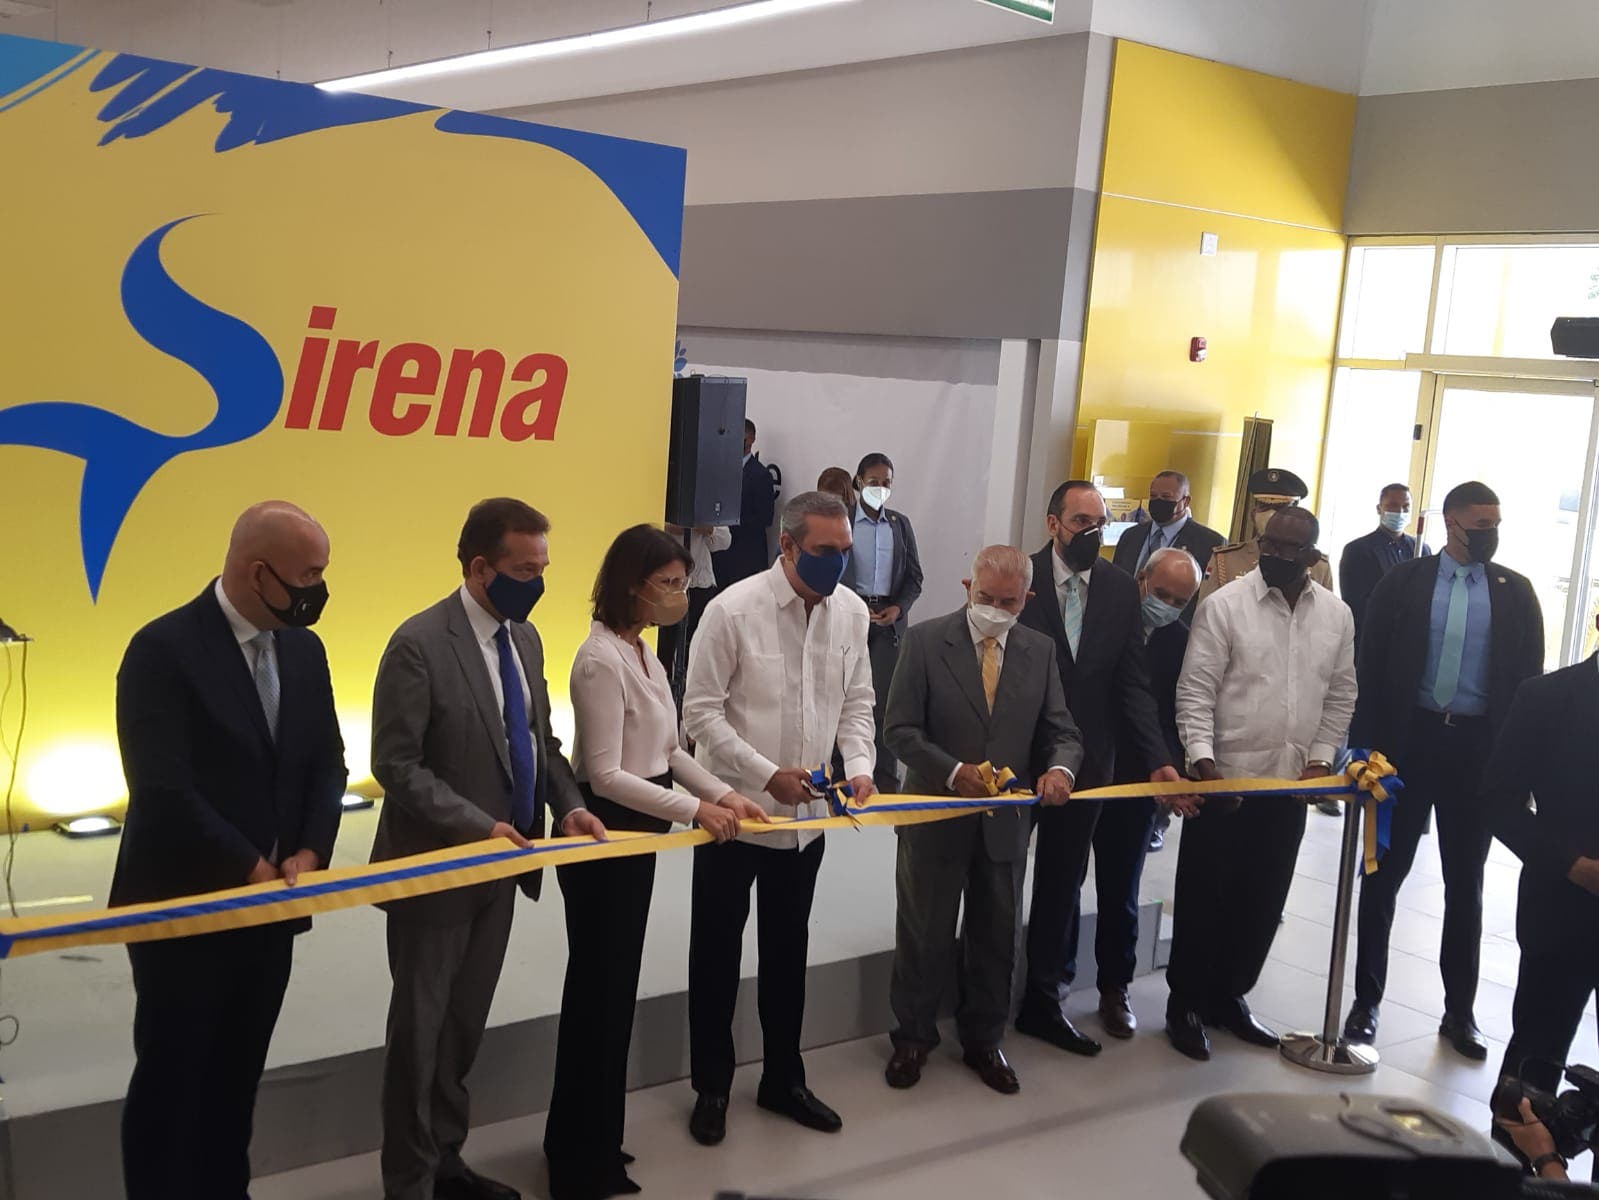 Grupo Ramos inaugura tienda Sirena Los Alcarrizos